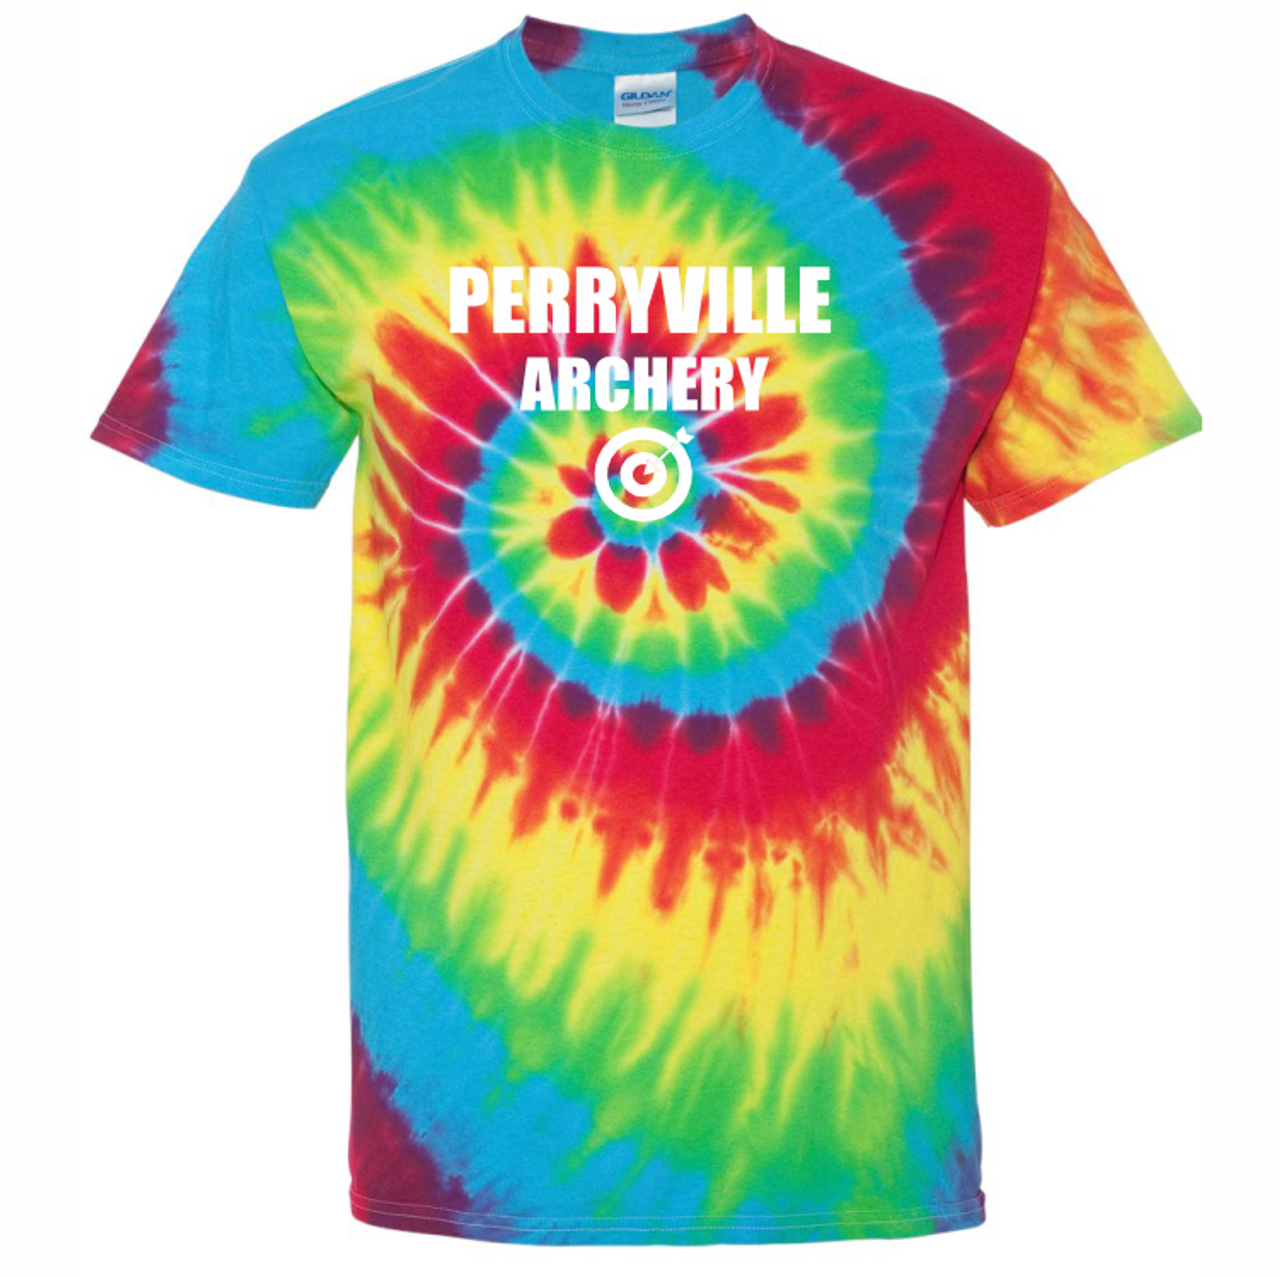 Perryville MS Archery Tie Dye Tee